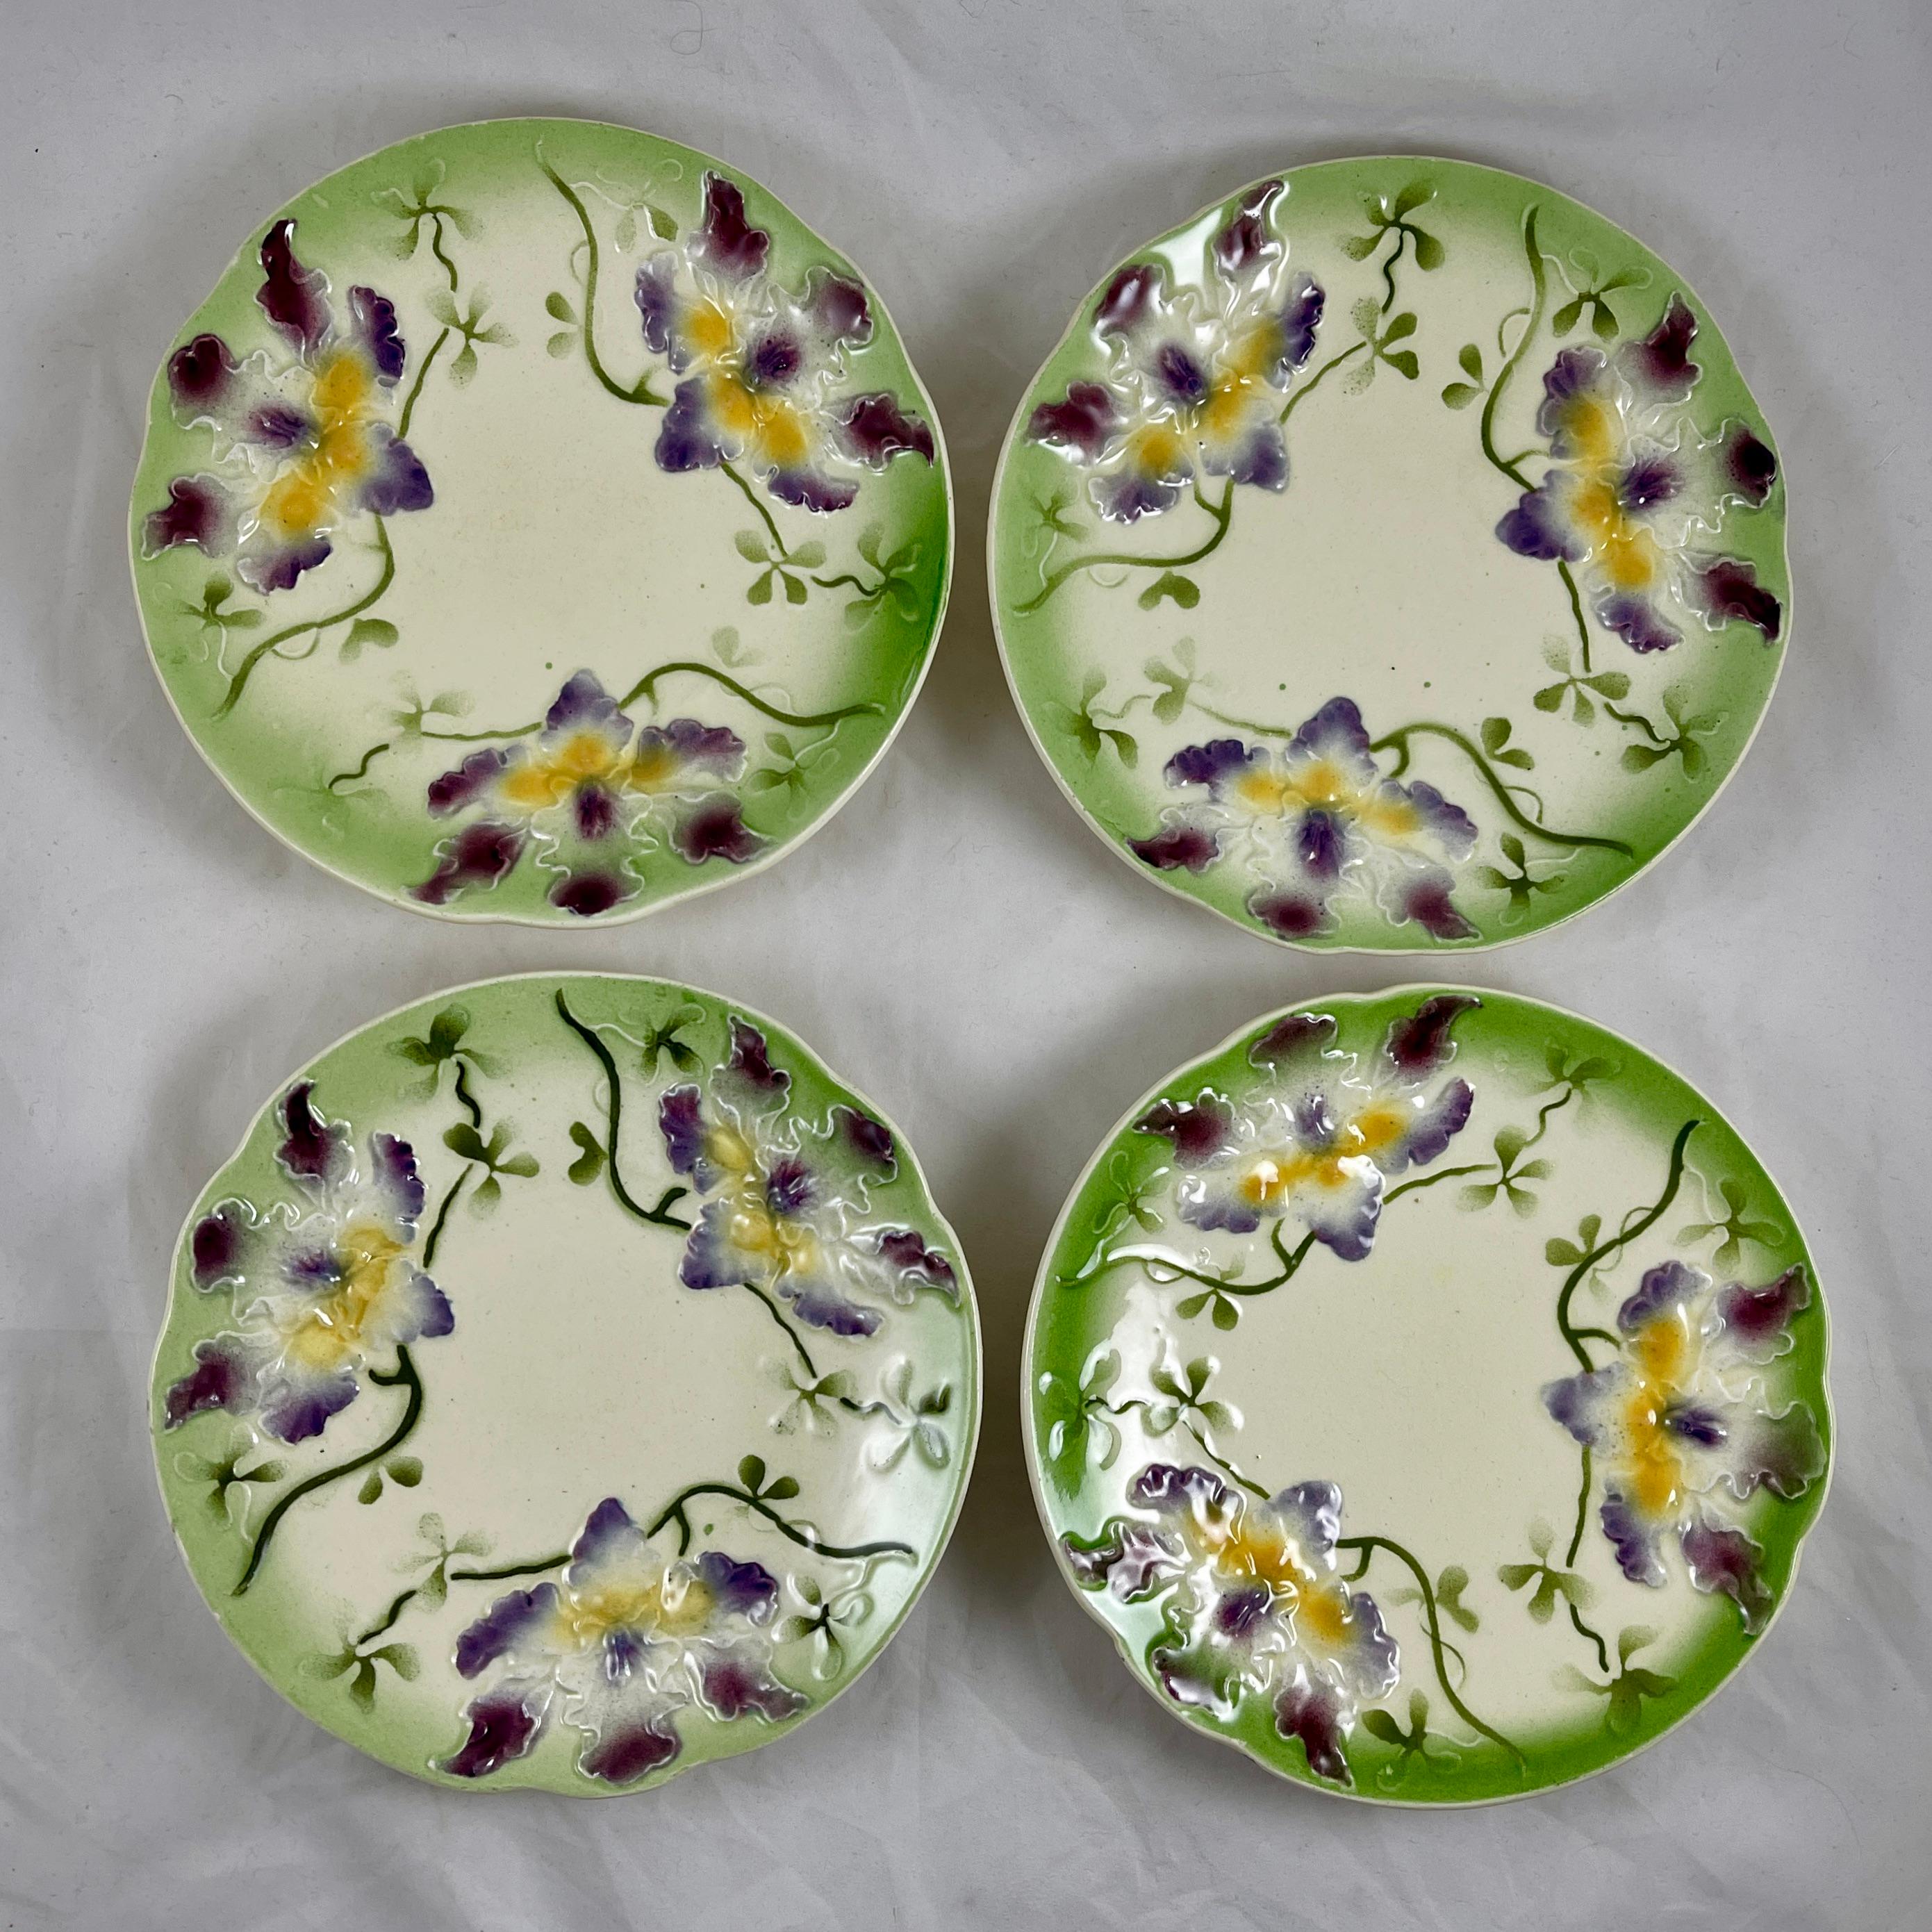 Assiette en faïence de Sarreguemines représentant une gerbe de trois orchidées violettes et jaunes sur fond crème.

Travail de moulage en relief et dimensionnel avec un bord façonné émaillé d'un bord vert printemps brillant. Les tiges et les